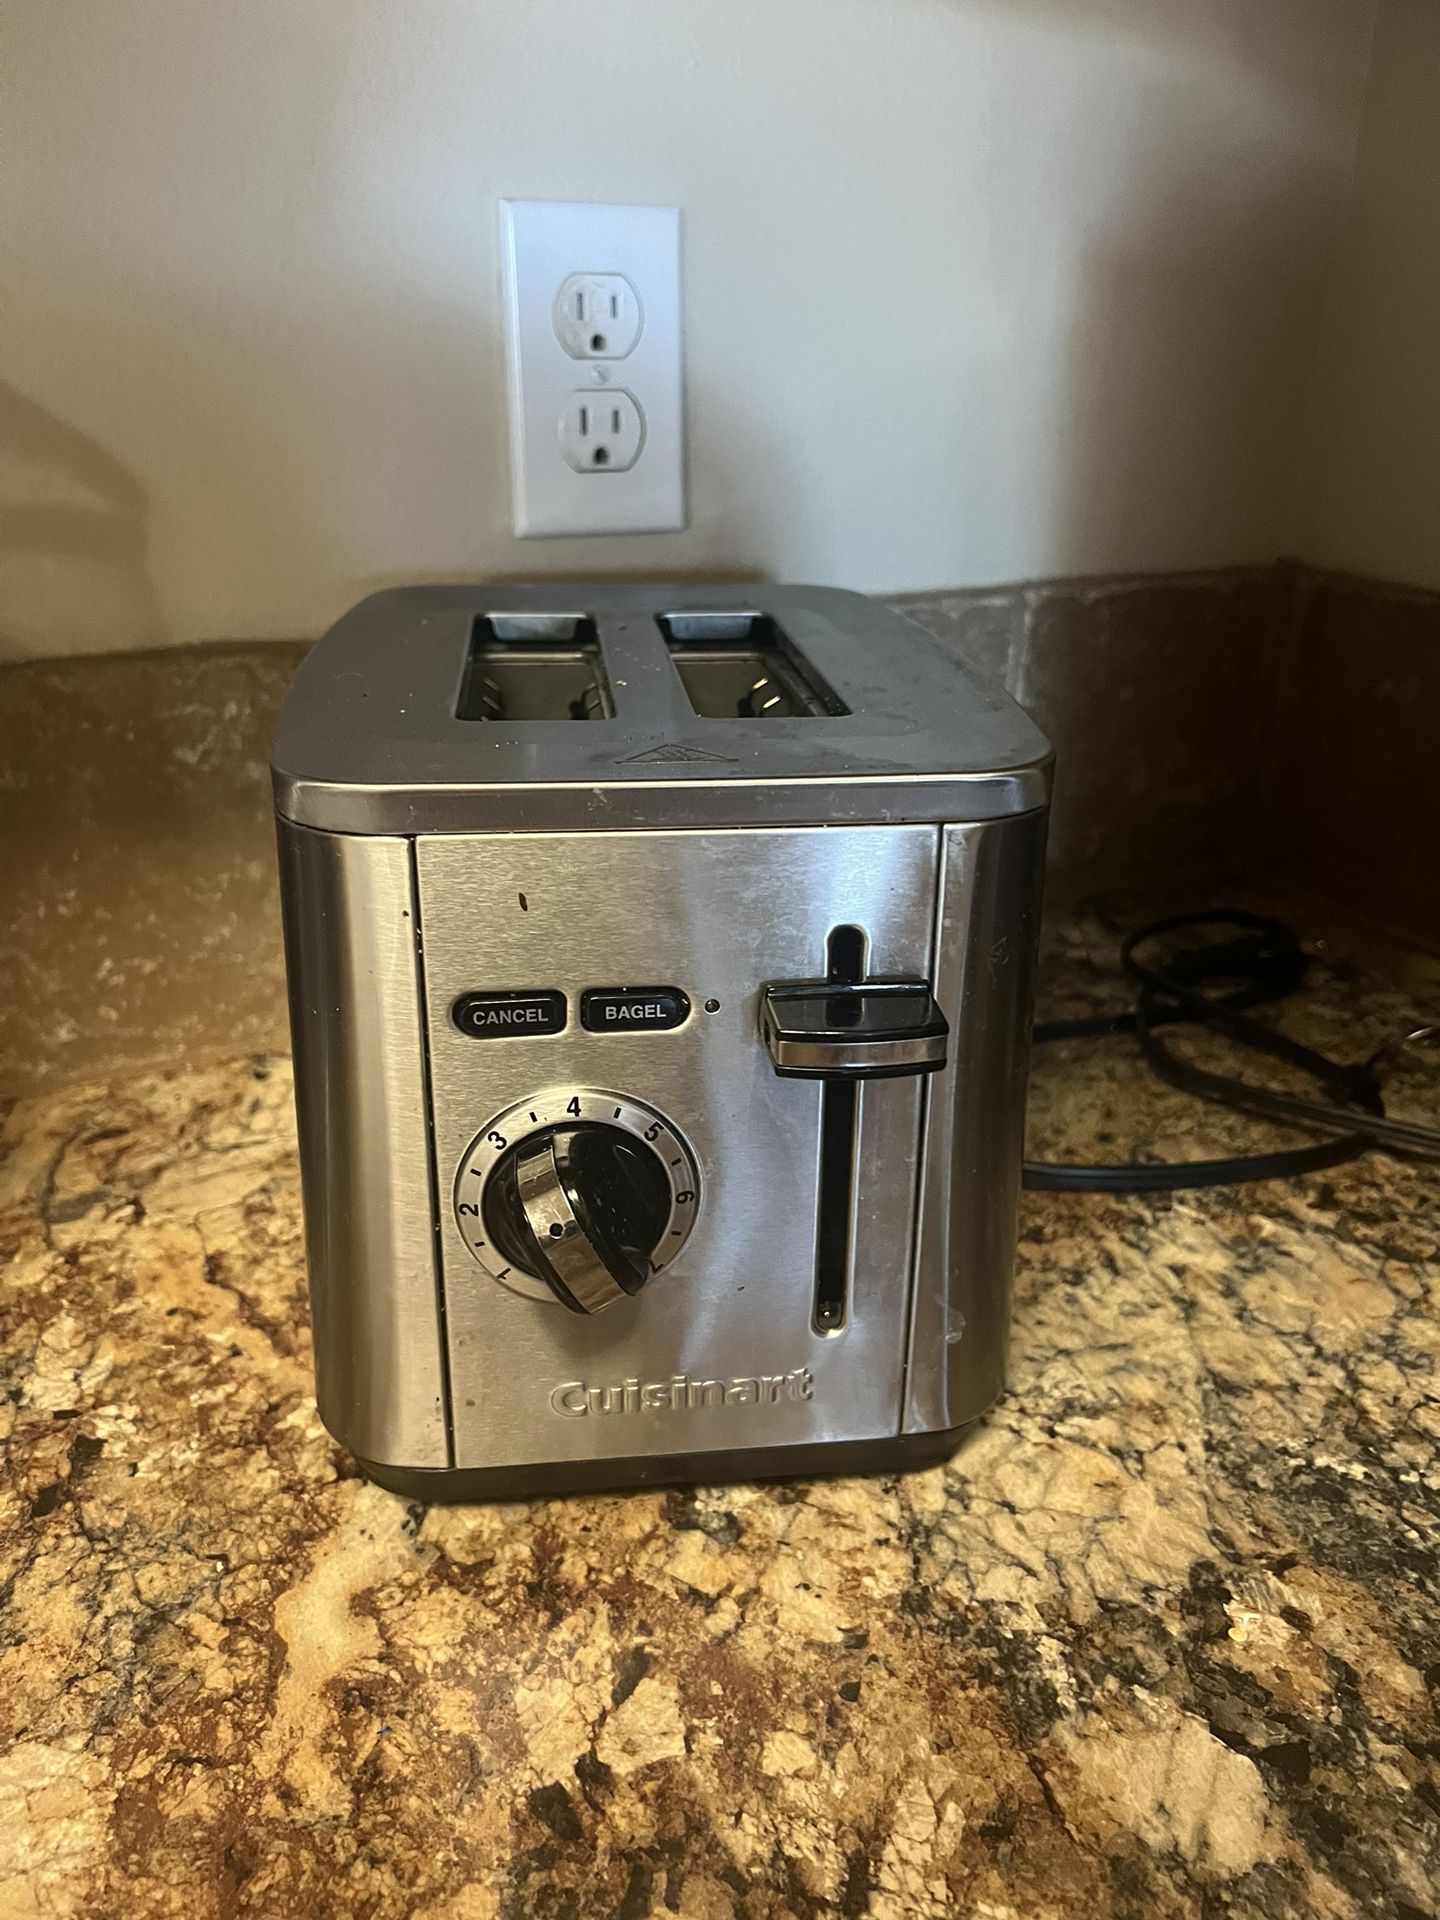 Crusinart Toaster